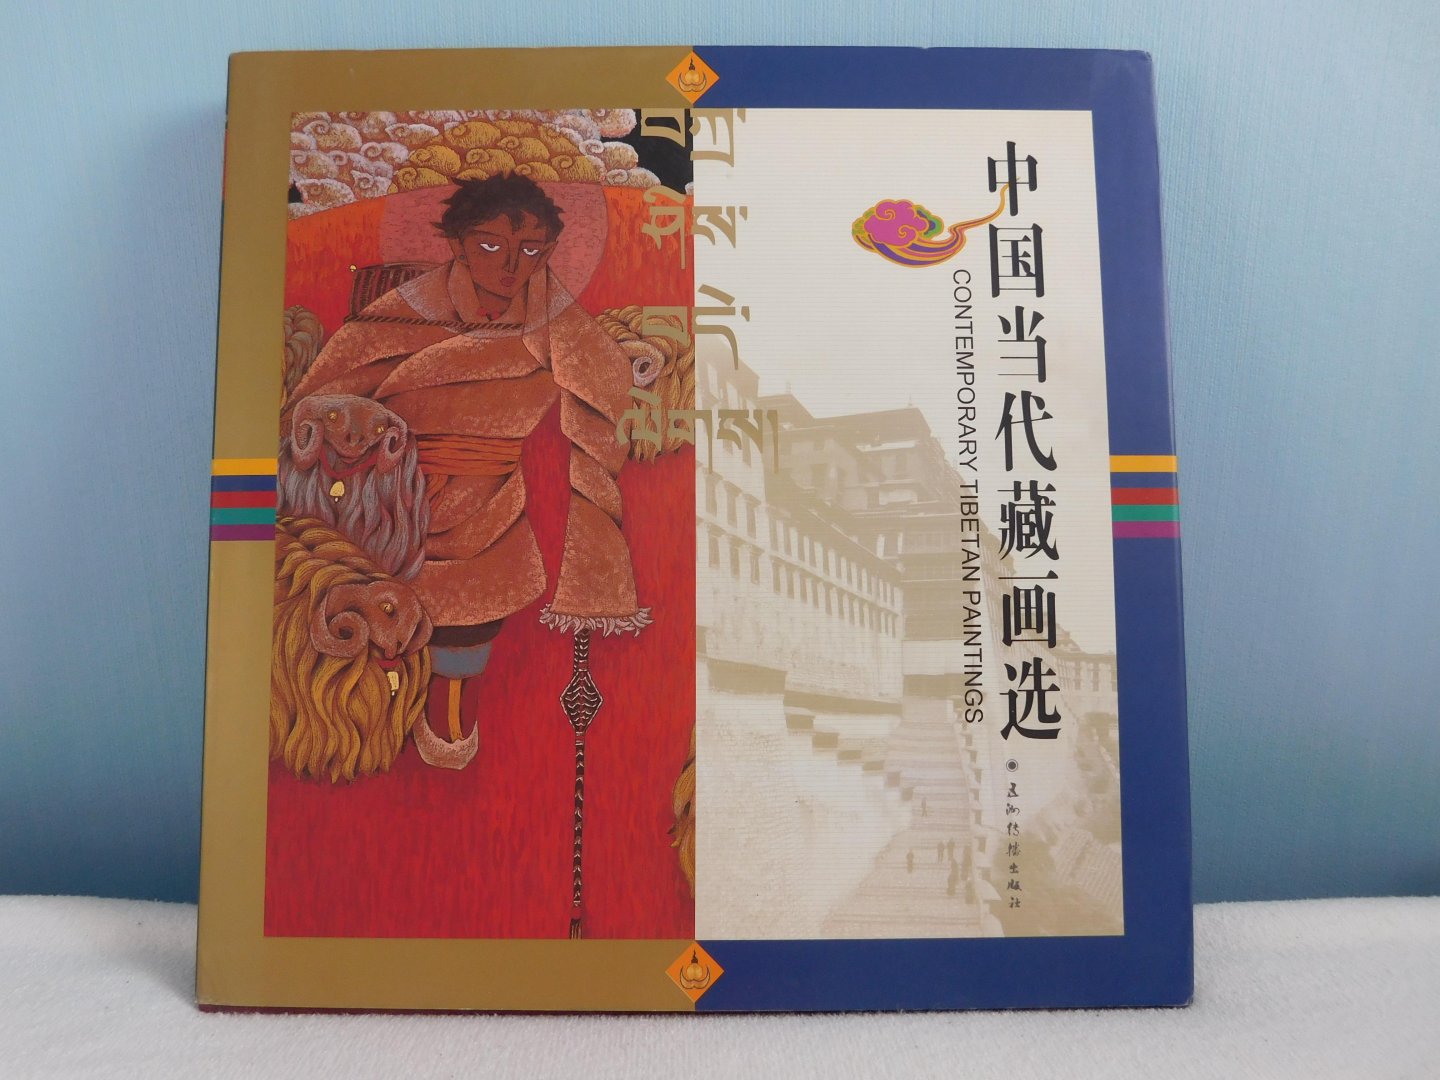 GUO WU YUAN XIN WEN BAN GONG SHI BIAN - Chinese Contemporary Tibetan Paintings (Chinese Edition)